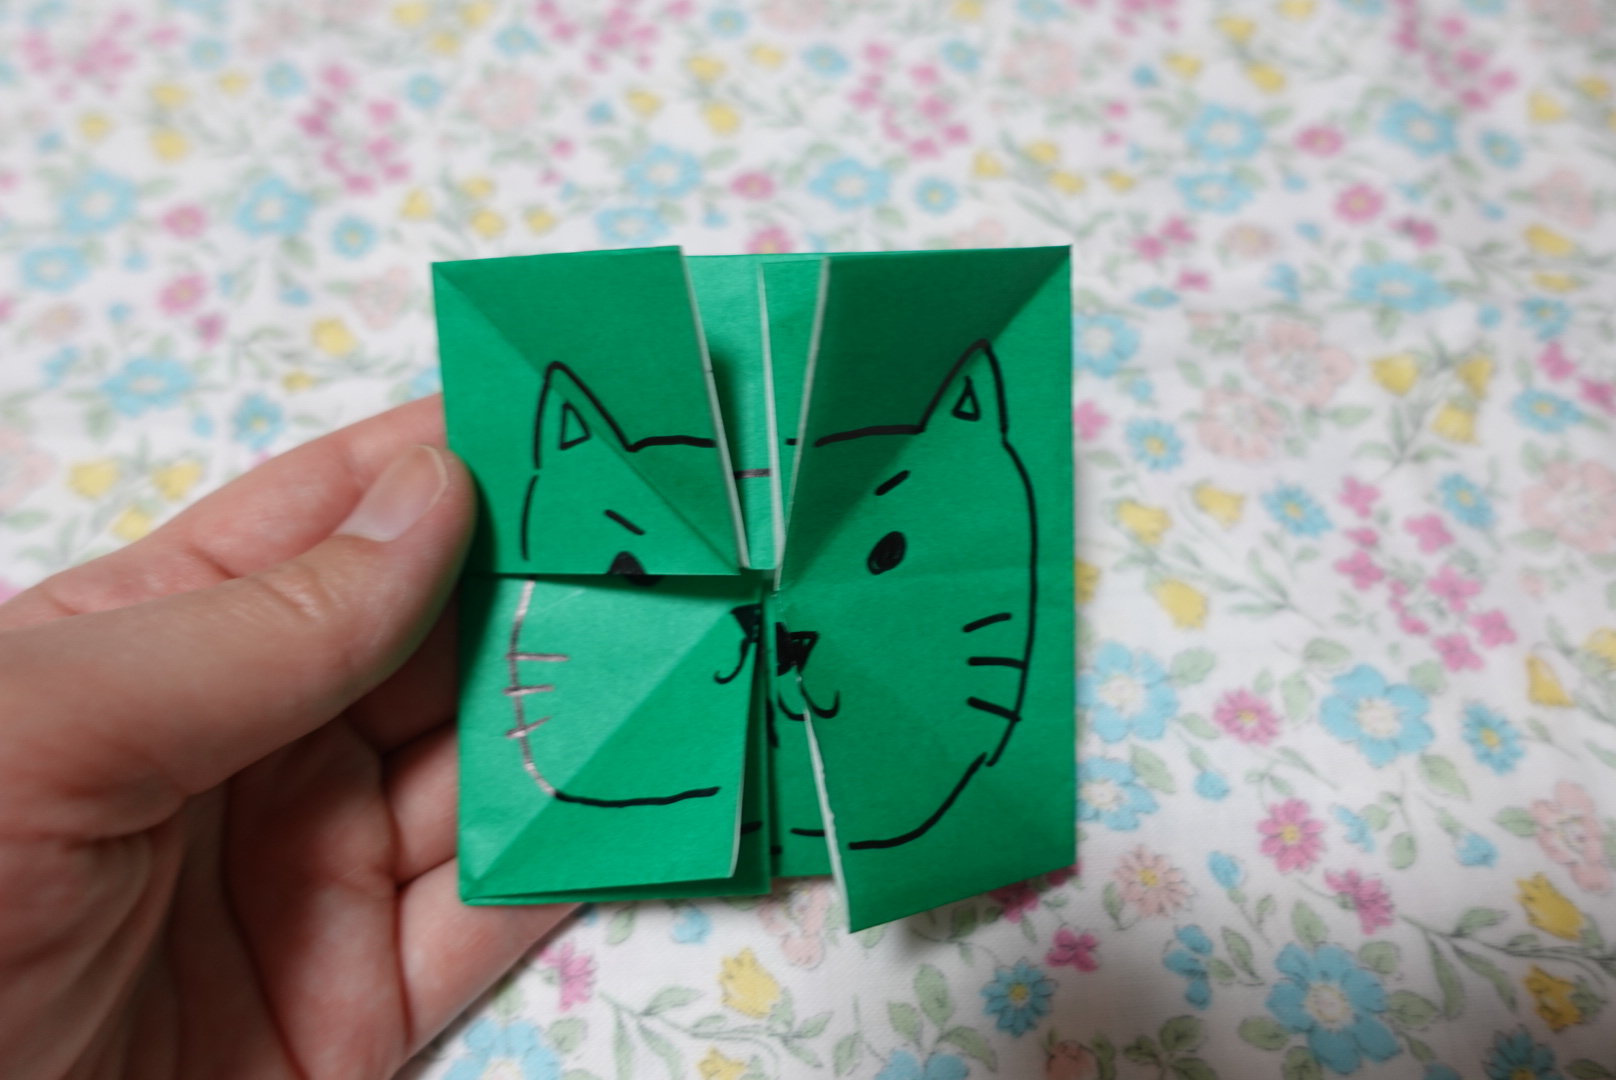 めくって楽しい 折り紙 かわりえ の折り方 保育所 名古屋 愛知 保育所の開設 運営ならトットメイト